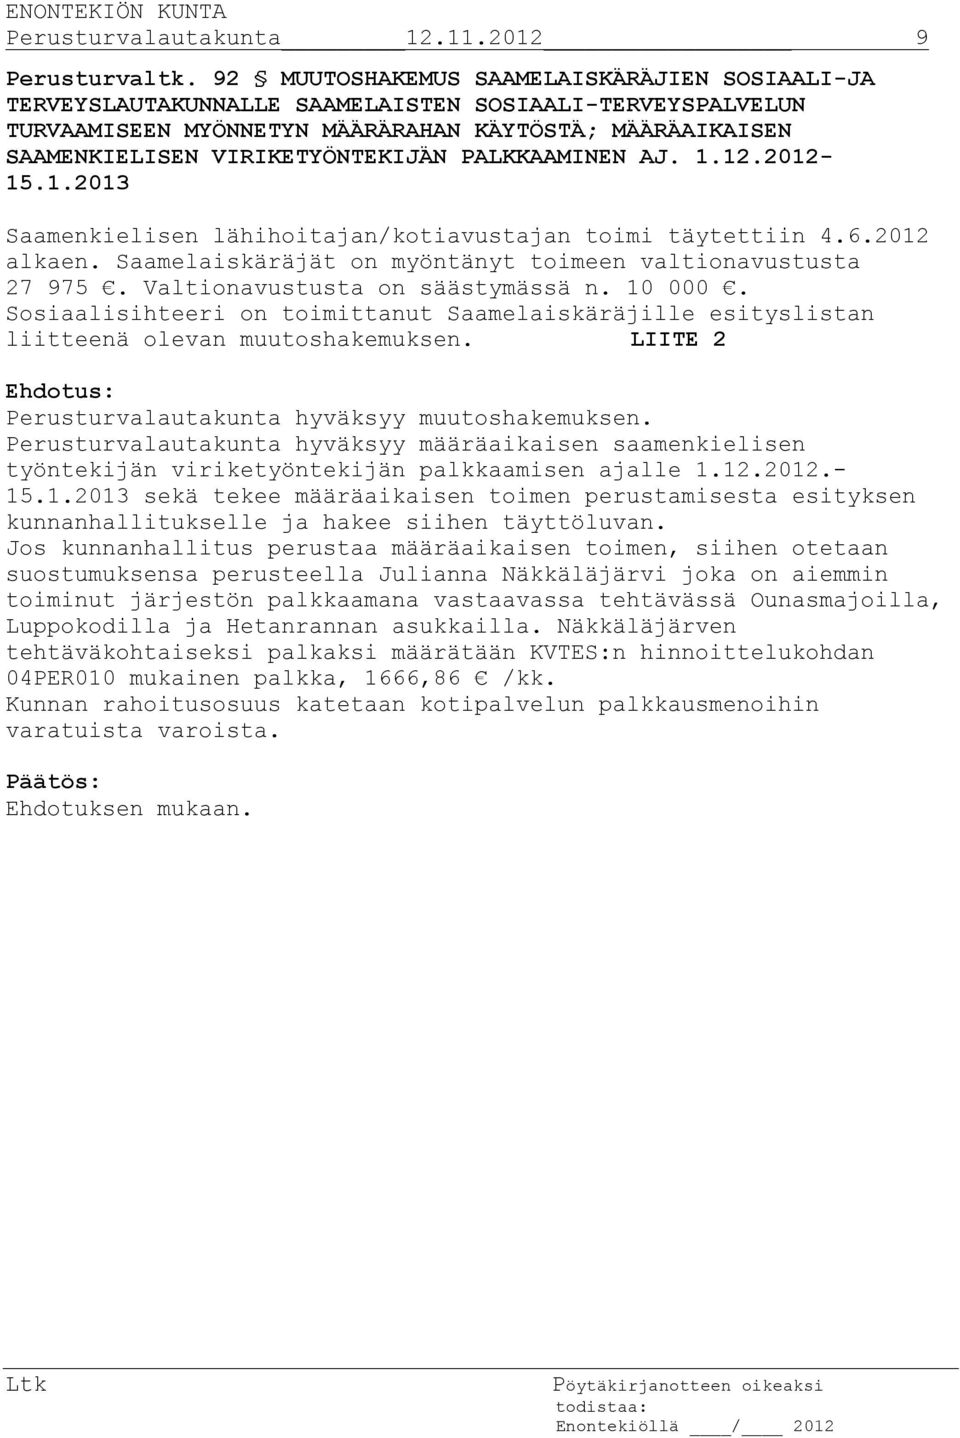 PALKKAAMINEN AJ. 1.12.2012-15.1.2013 Saamenkielisen lähihoitajan/kotiavustajan toimi täytettiin 4.6.2012 alkaen. Saamelaiskäräjät on myöntänyt toimeen valtionavustusta 27 975.